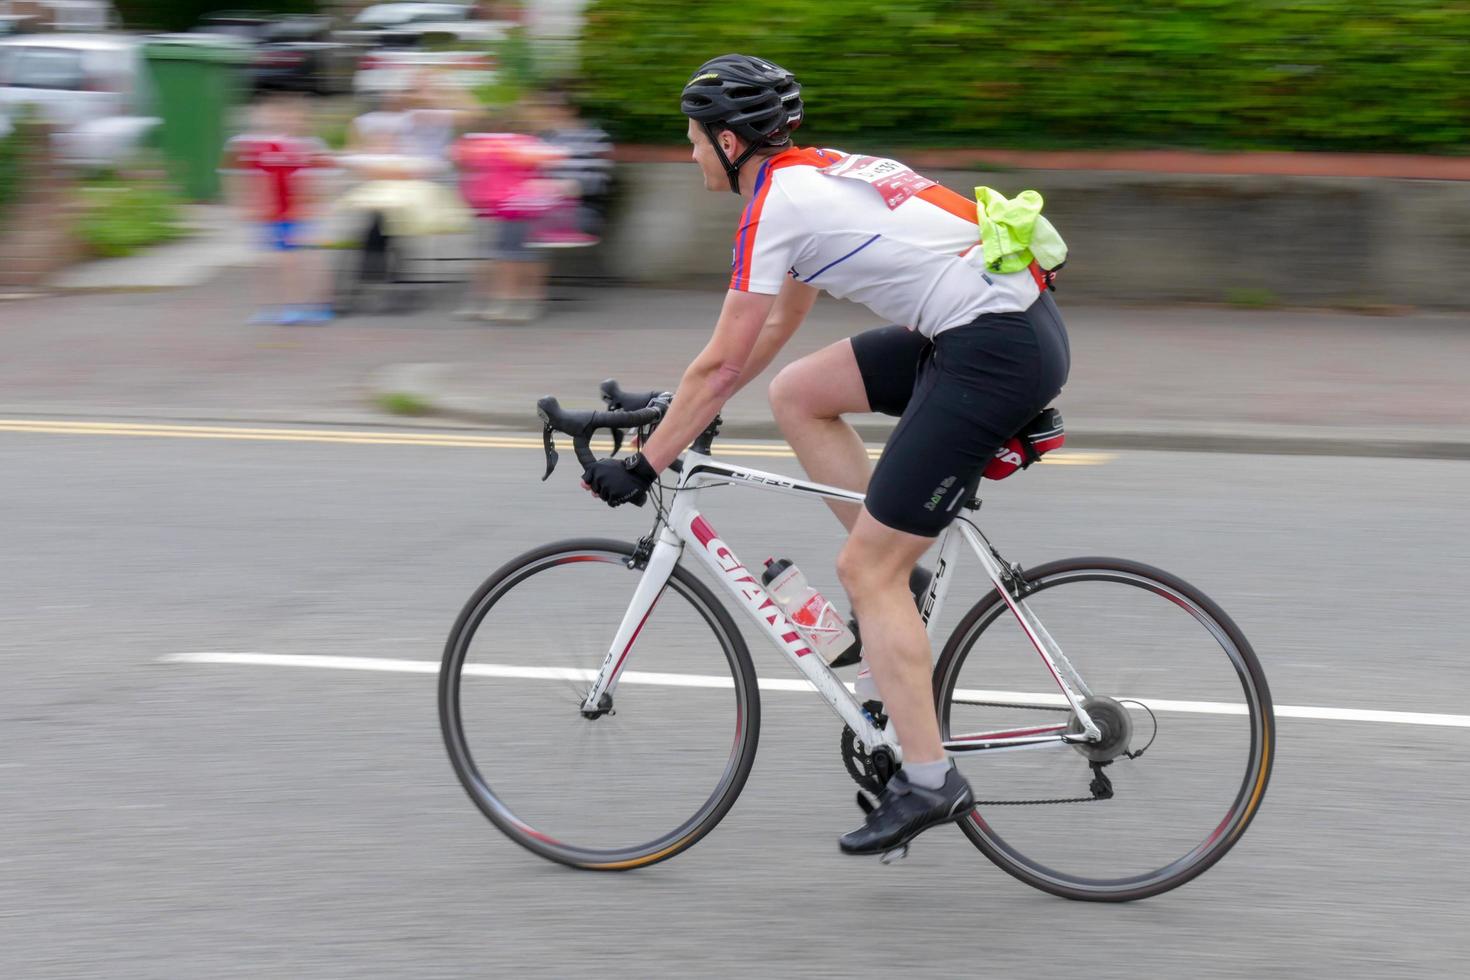 cardiff, wales, uk, 2015. wielrenner die deelneemt aan het wielerevenement velothon foto